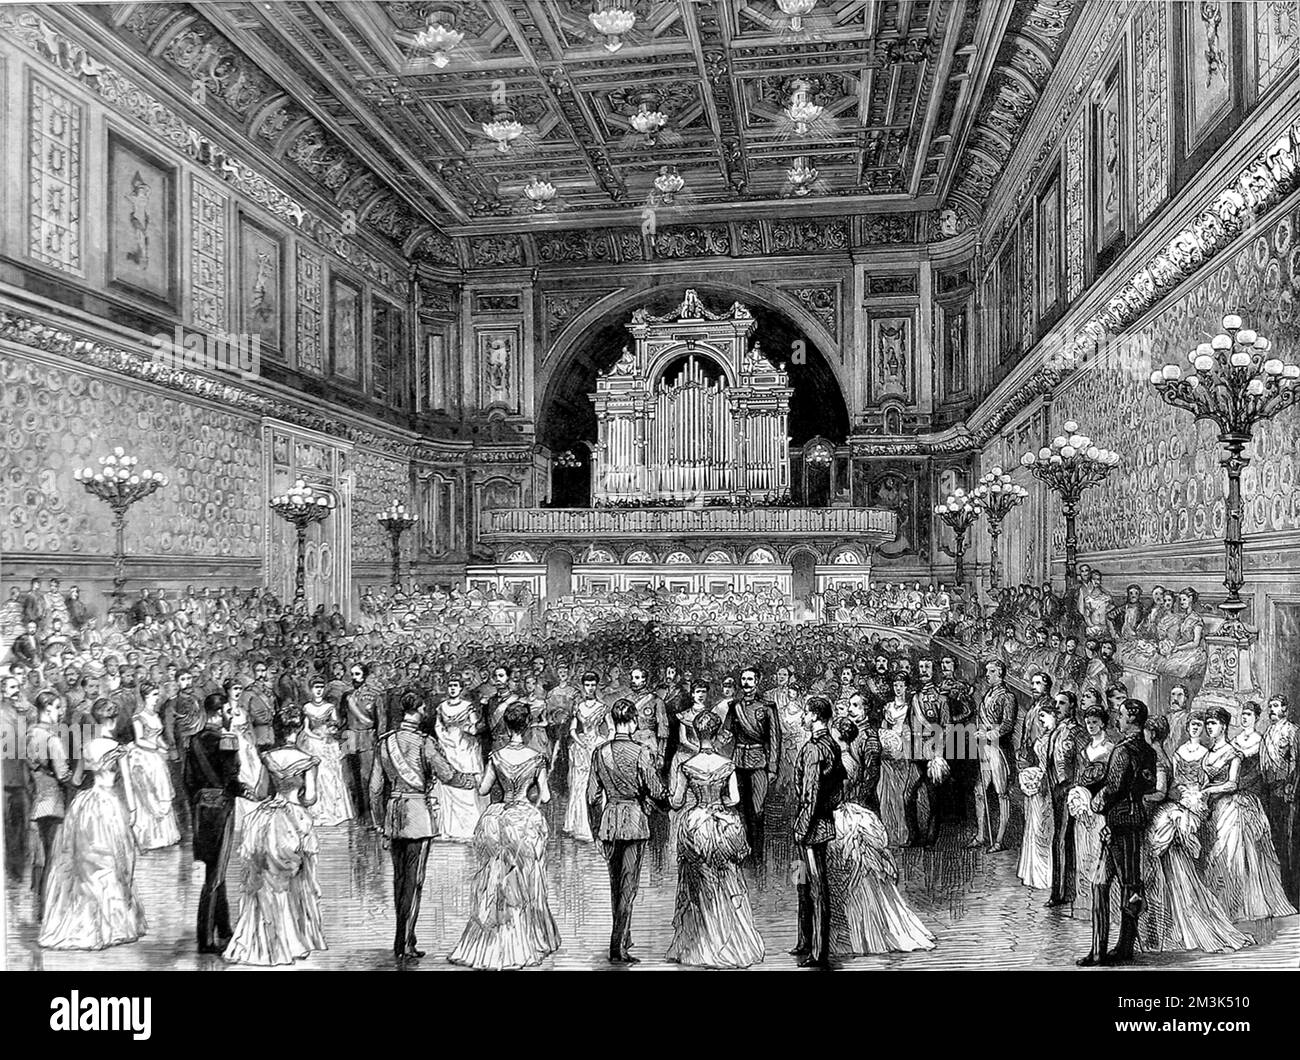 Gravur mit dem Ballsaal des Buckingham Palace, London, mit einem Ball im Gange, 1887. Alle Teilnehmer tragen formelle Kleidung, viele Männer tragen Militäruniform. Datum: 25. Juni 1887 Stockfoto